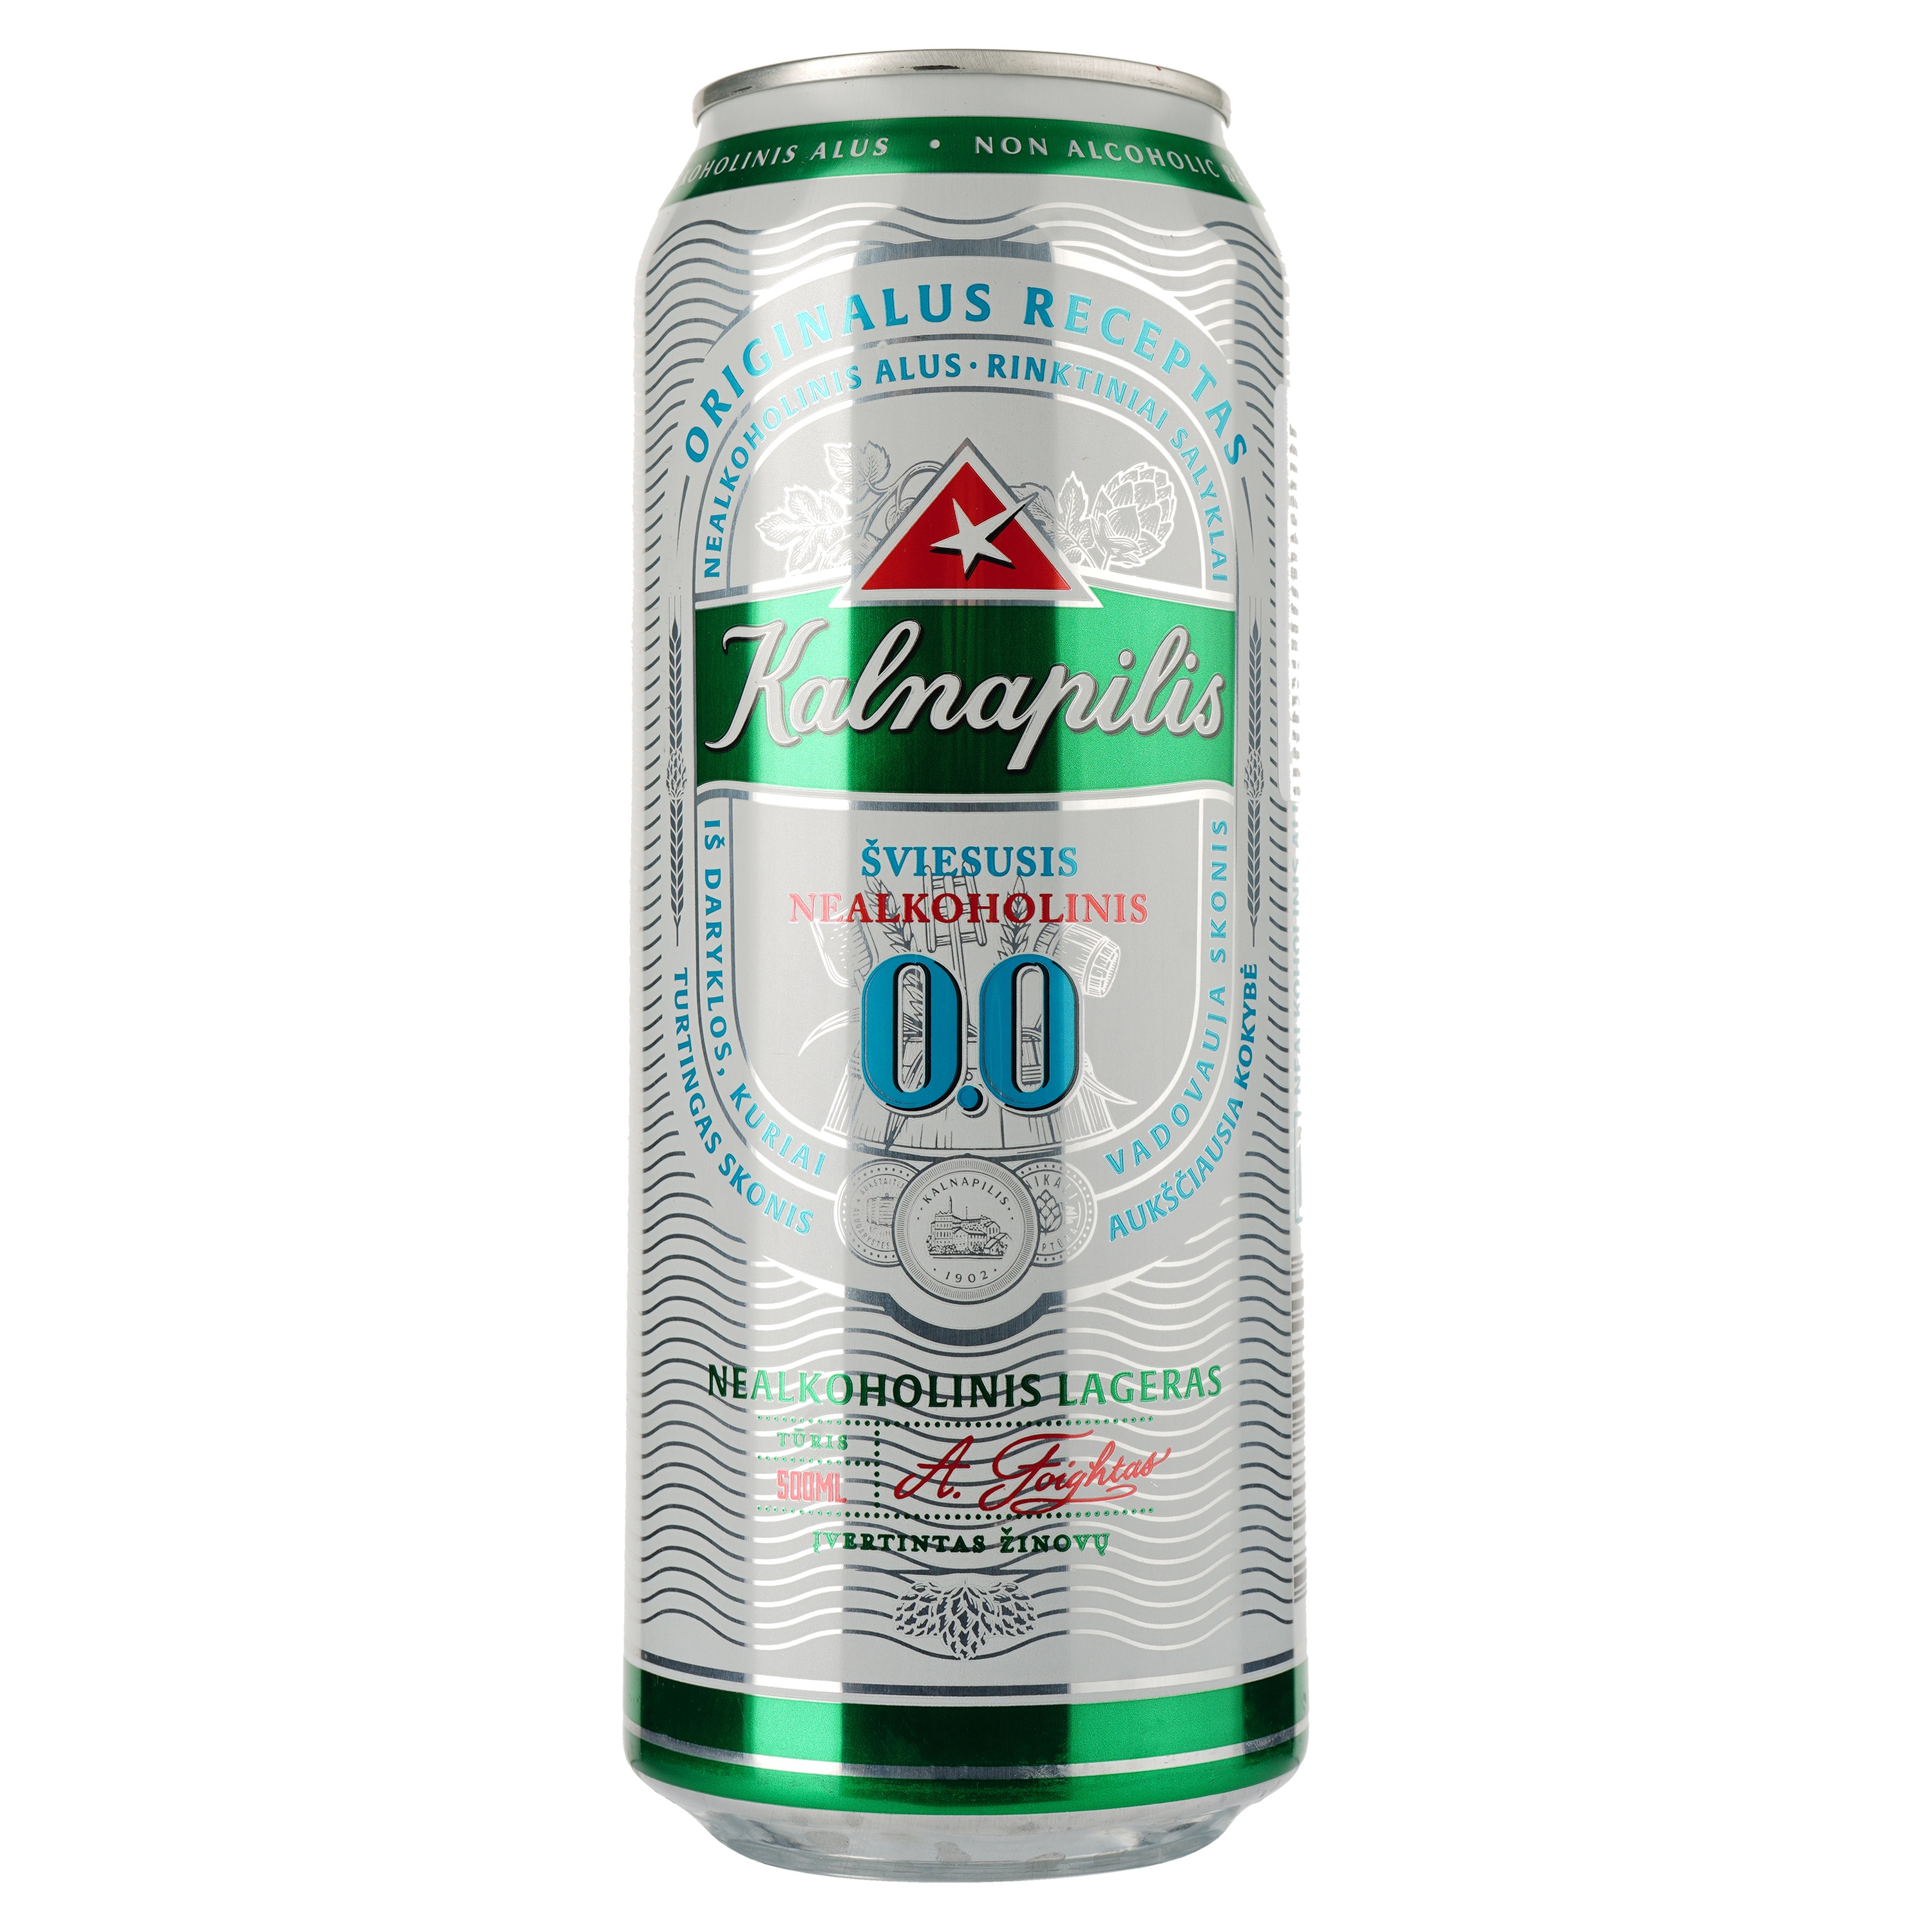 Пиво Kalnapilis Non-Alko Classic світле, з/б, 0.5 л - фото 1